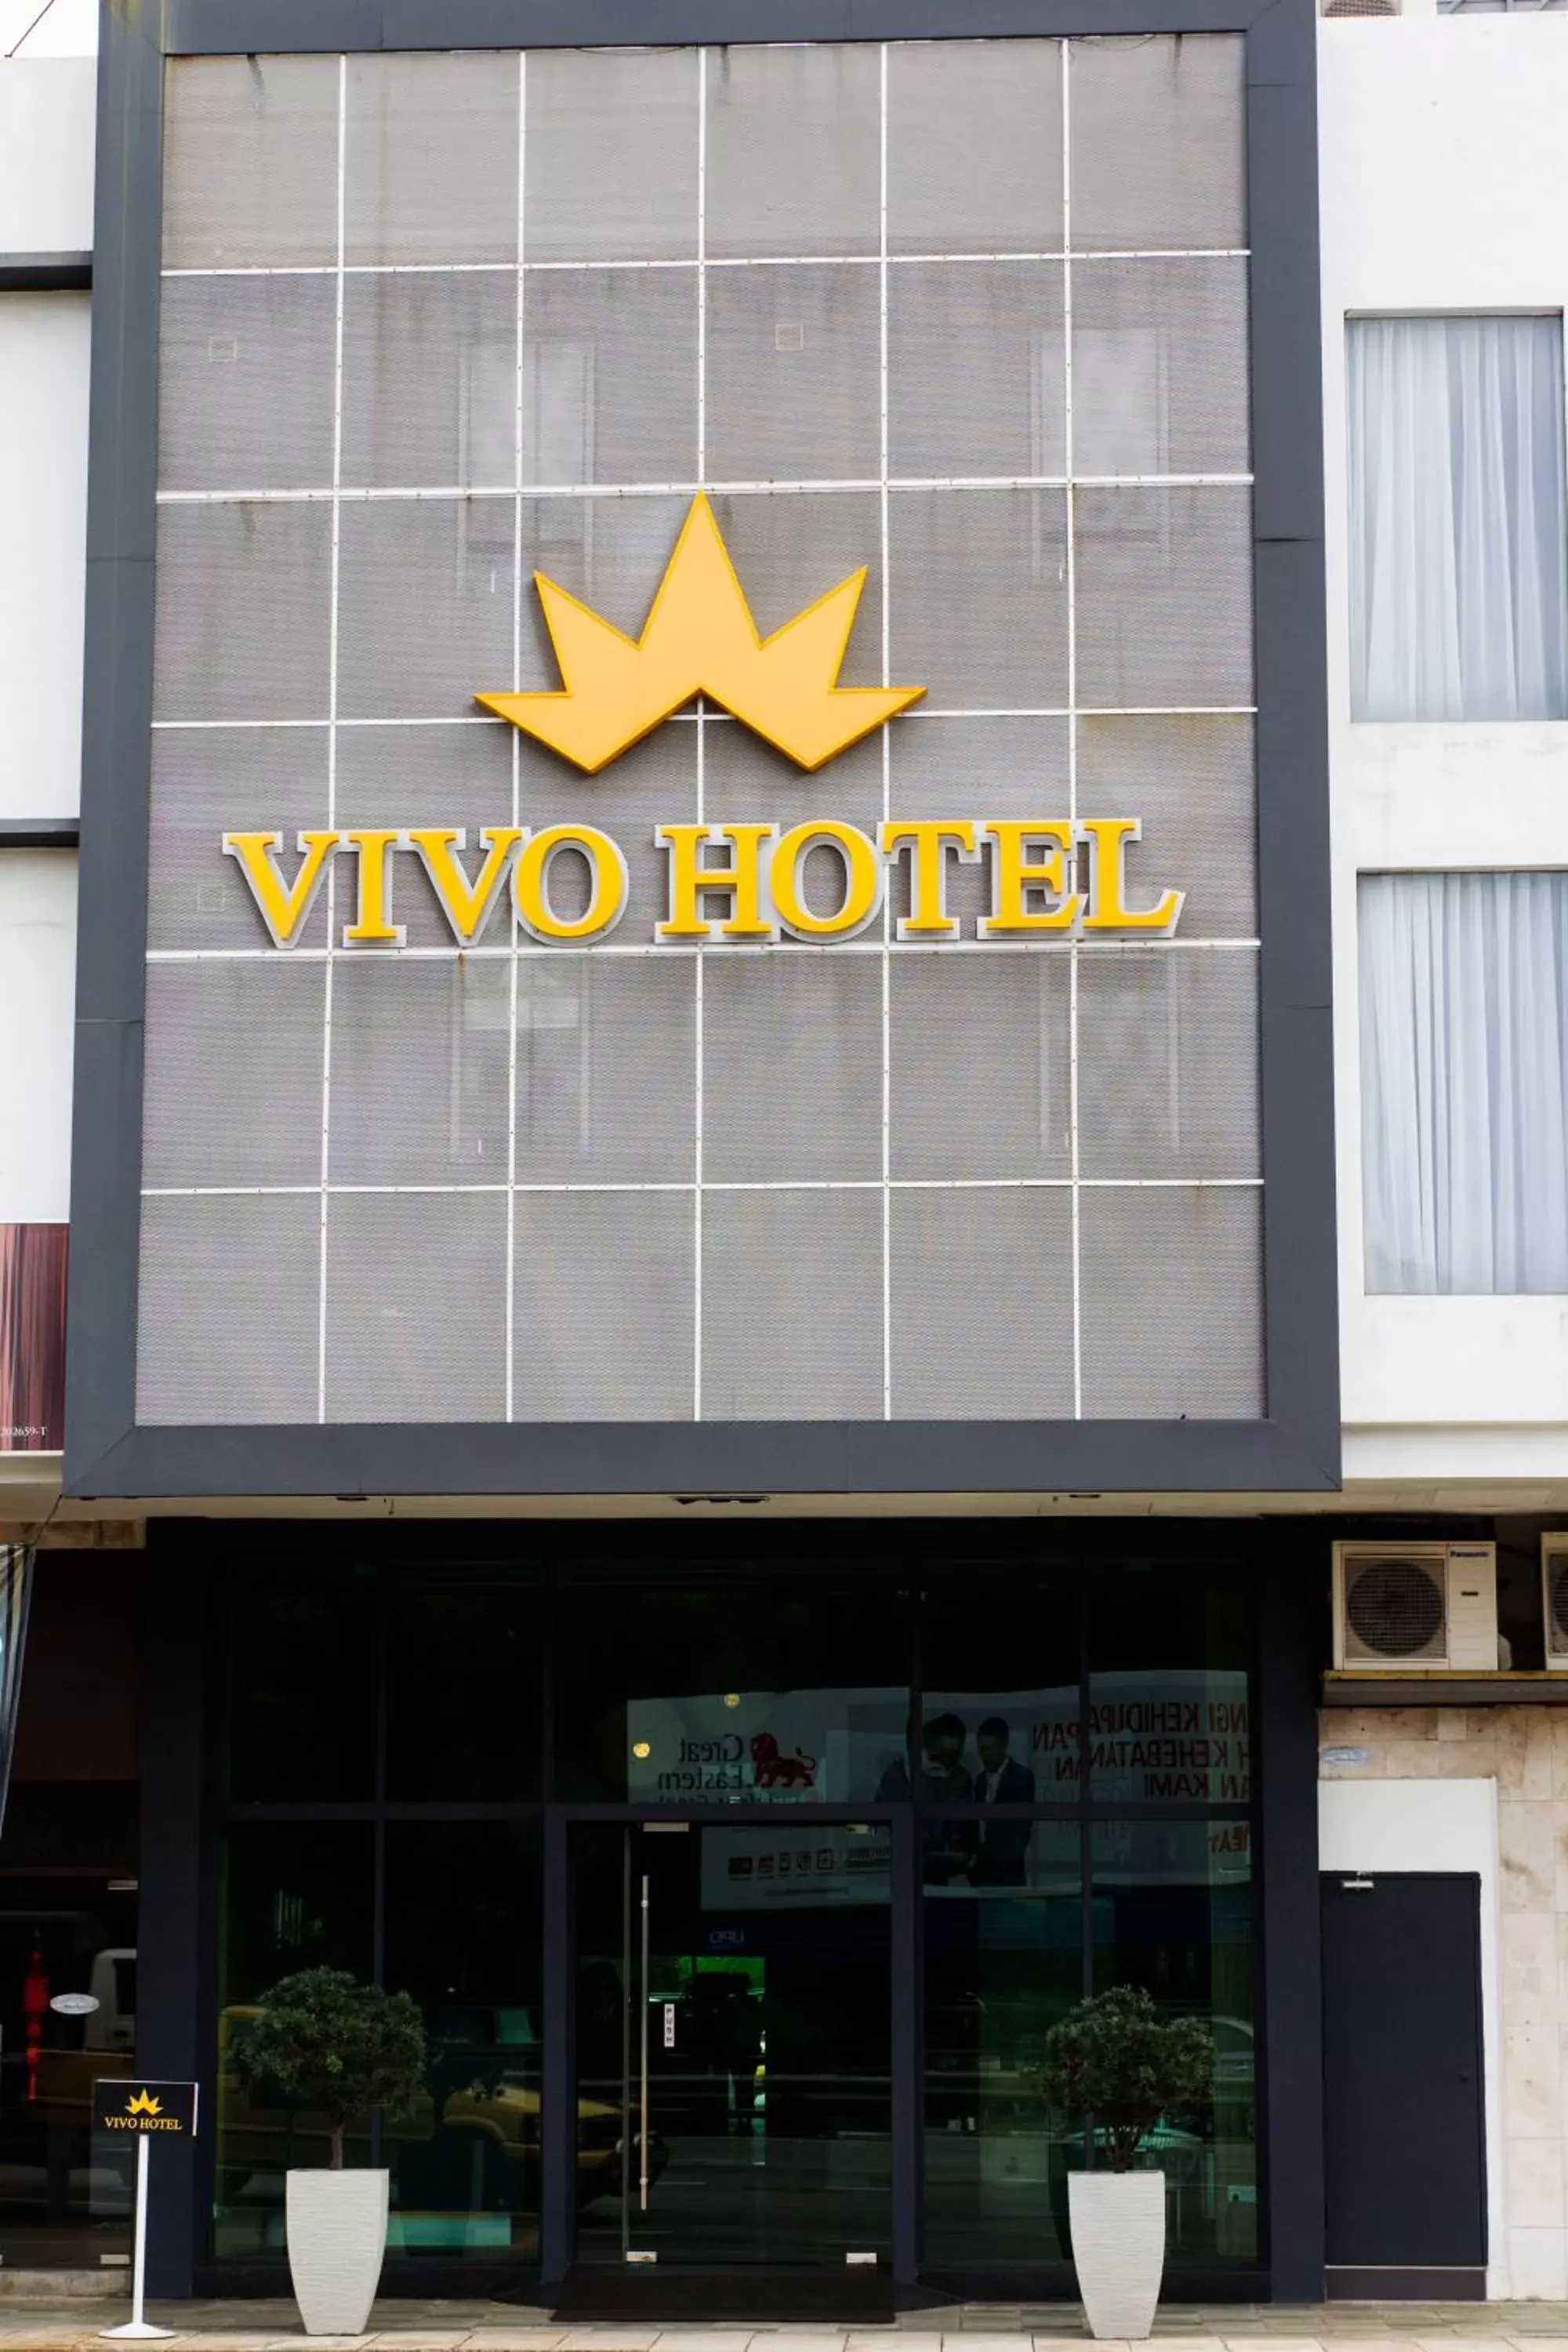 Property building in Vivo Hotel